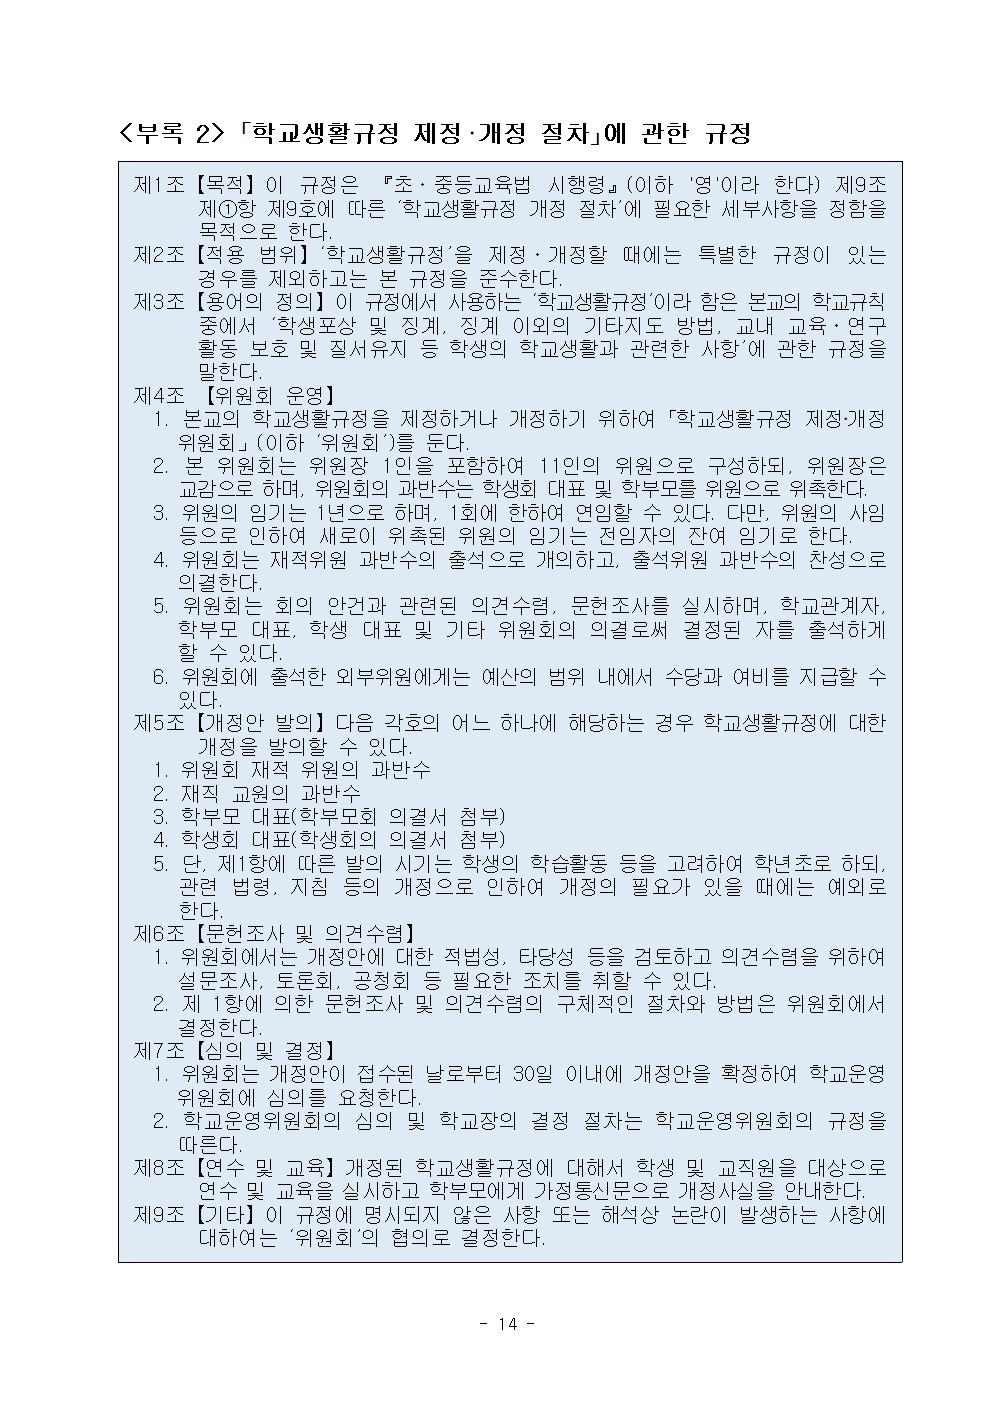 2022학년도 광혜원중학교 학생생활규정015